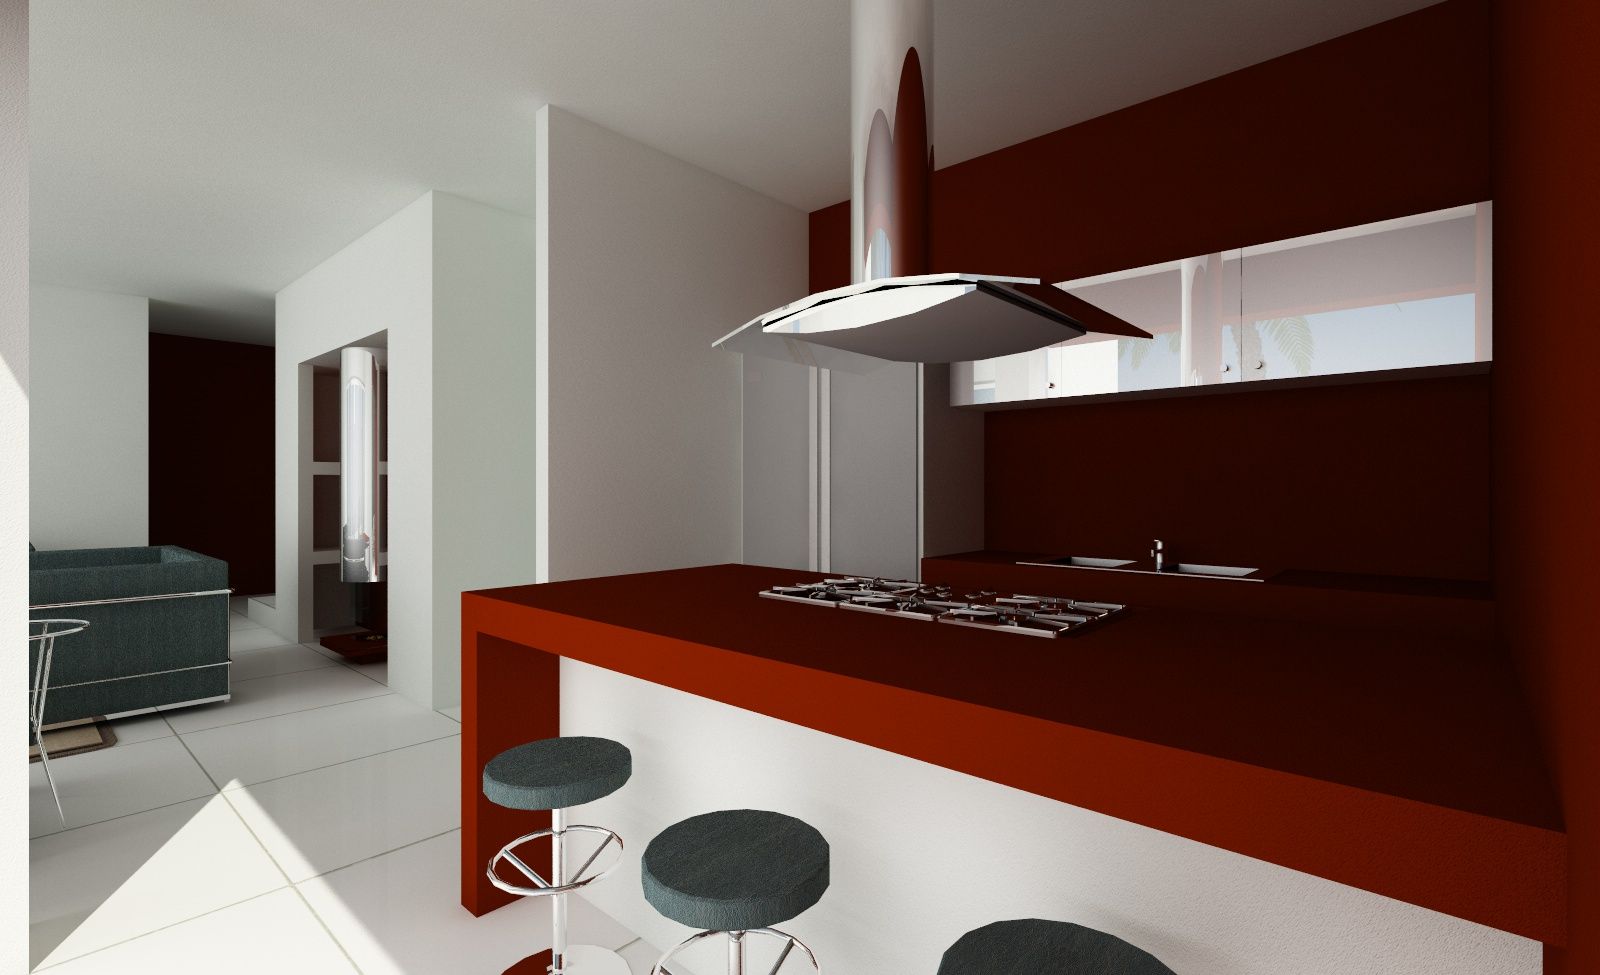 Keukeneiland MEF Architect Keukenblokken Leisteen keuken,keukeneiland,modern,minimalistisch,composiet,barkrukken